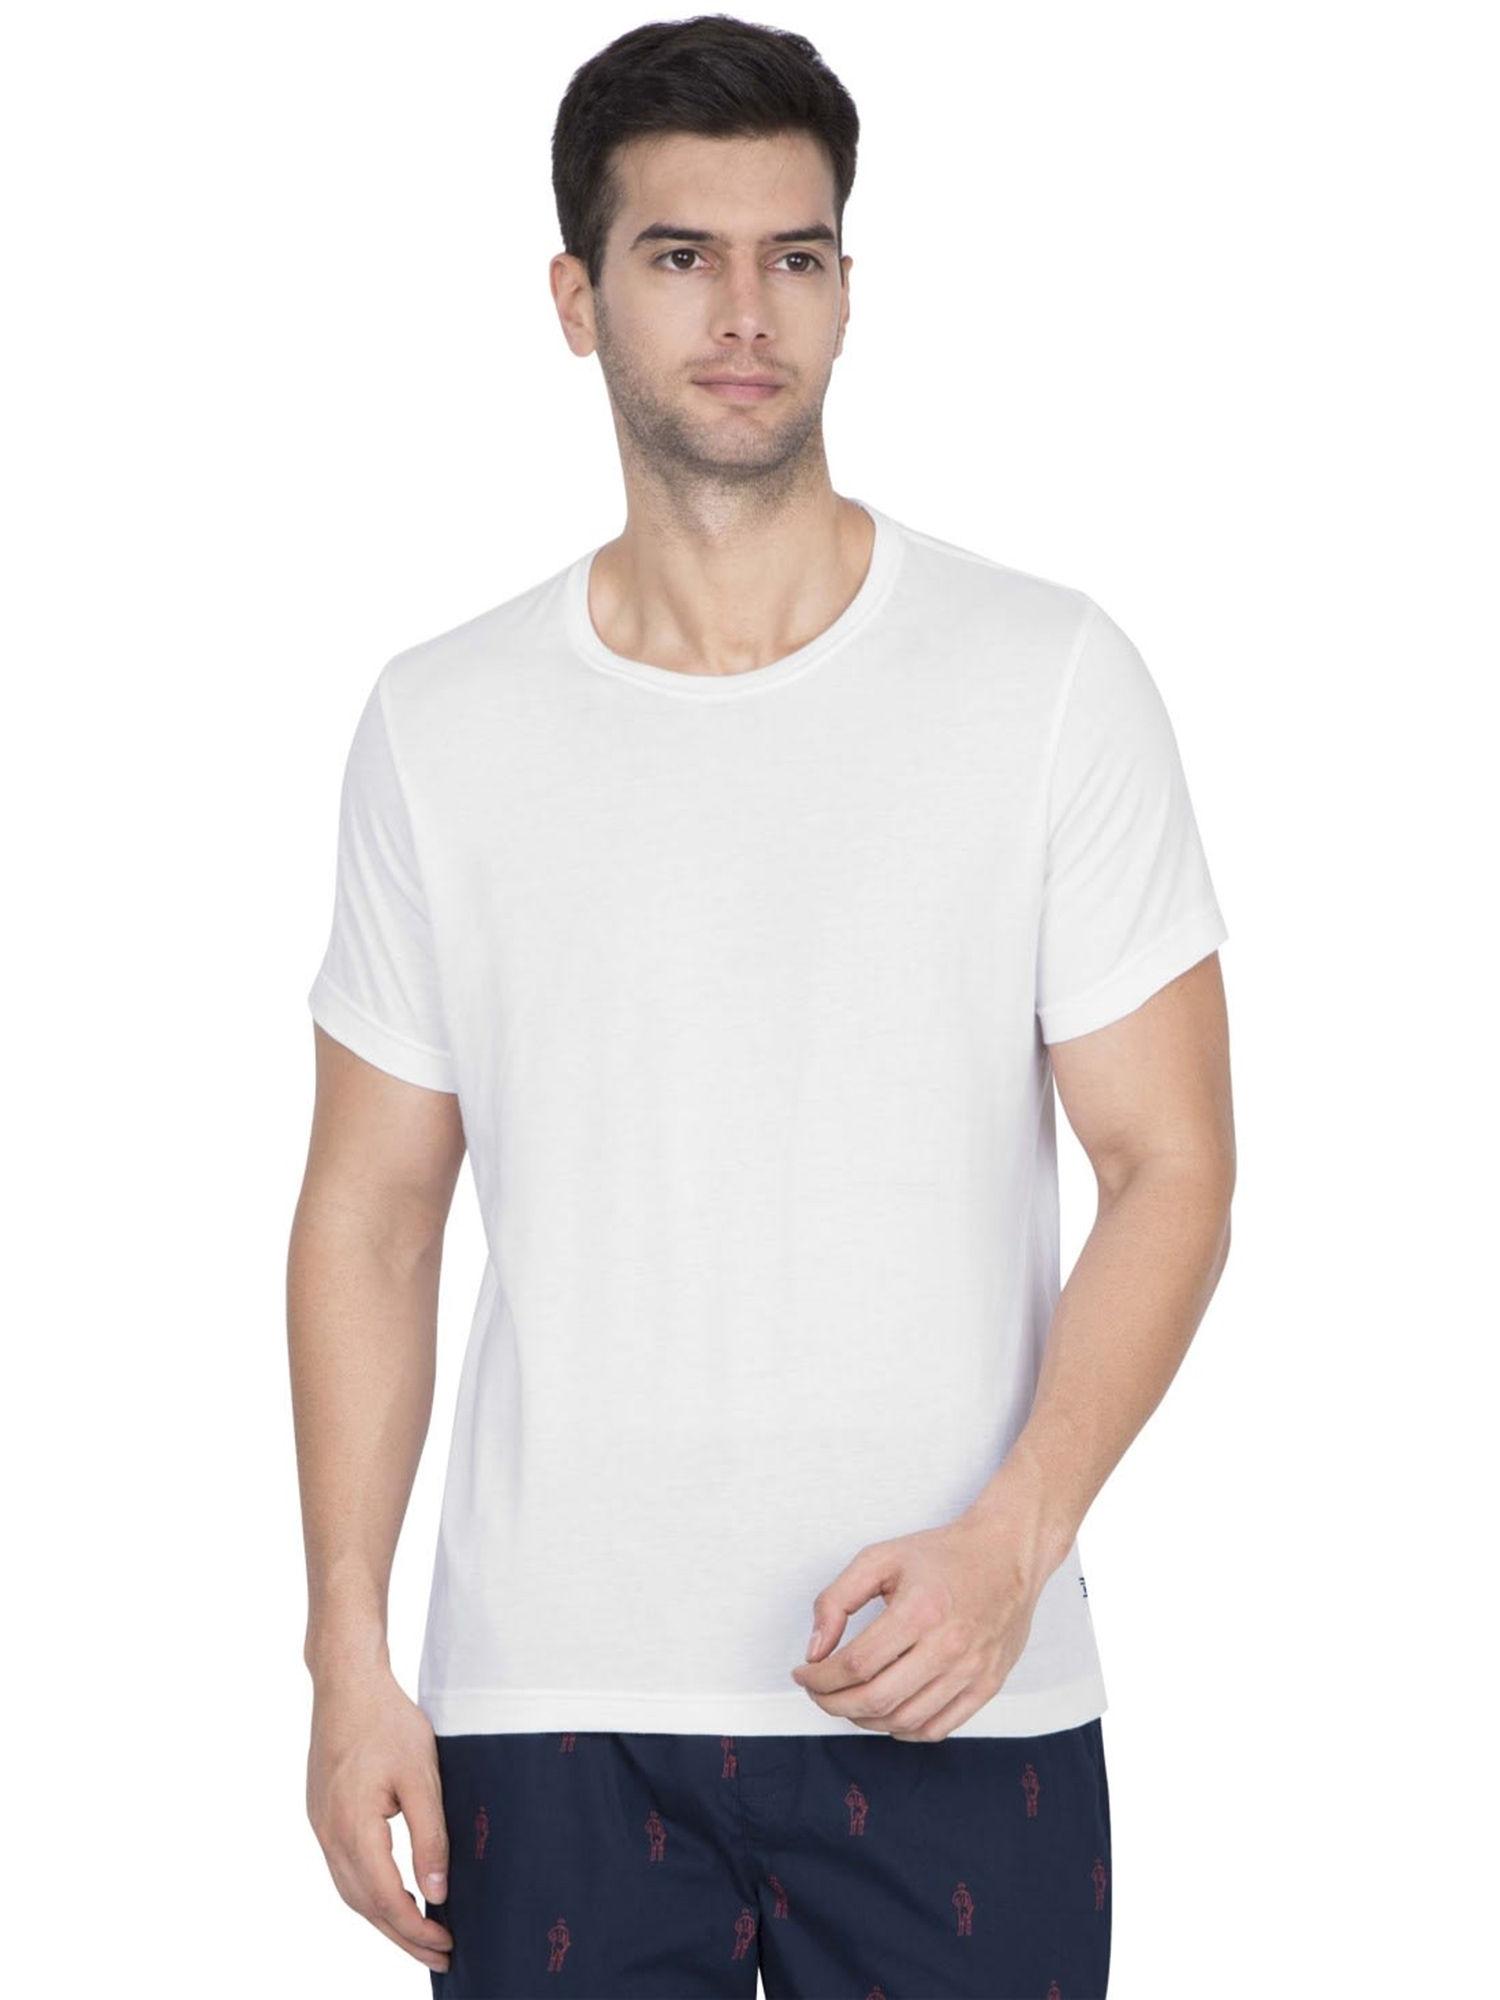 white inner t shirt